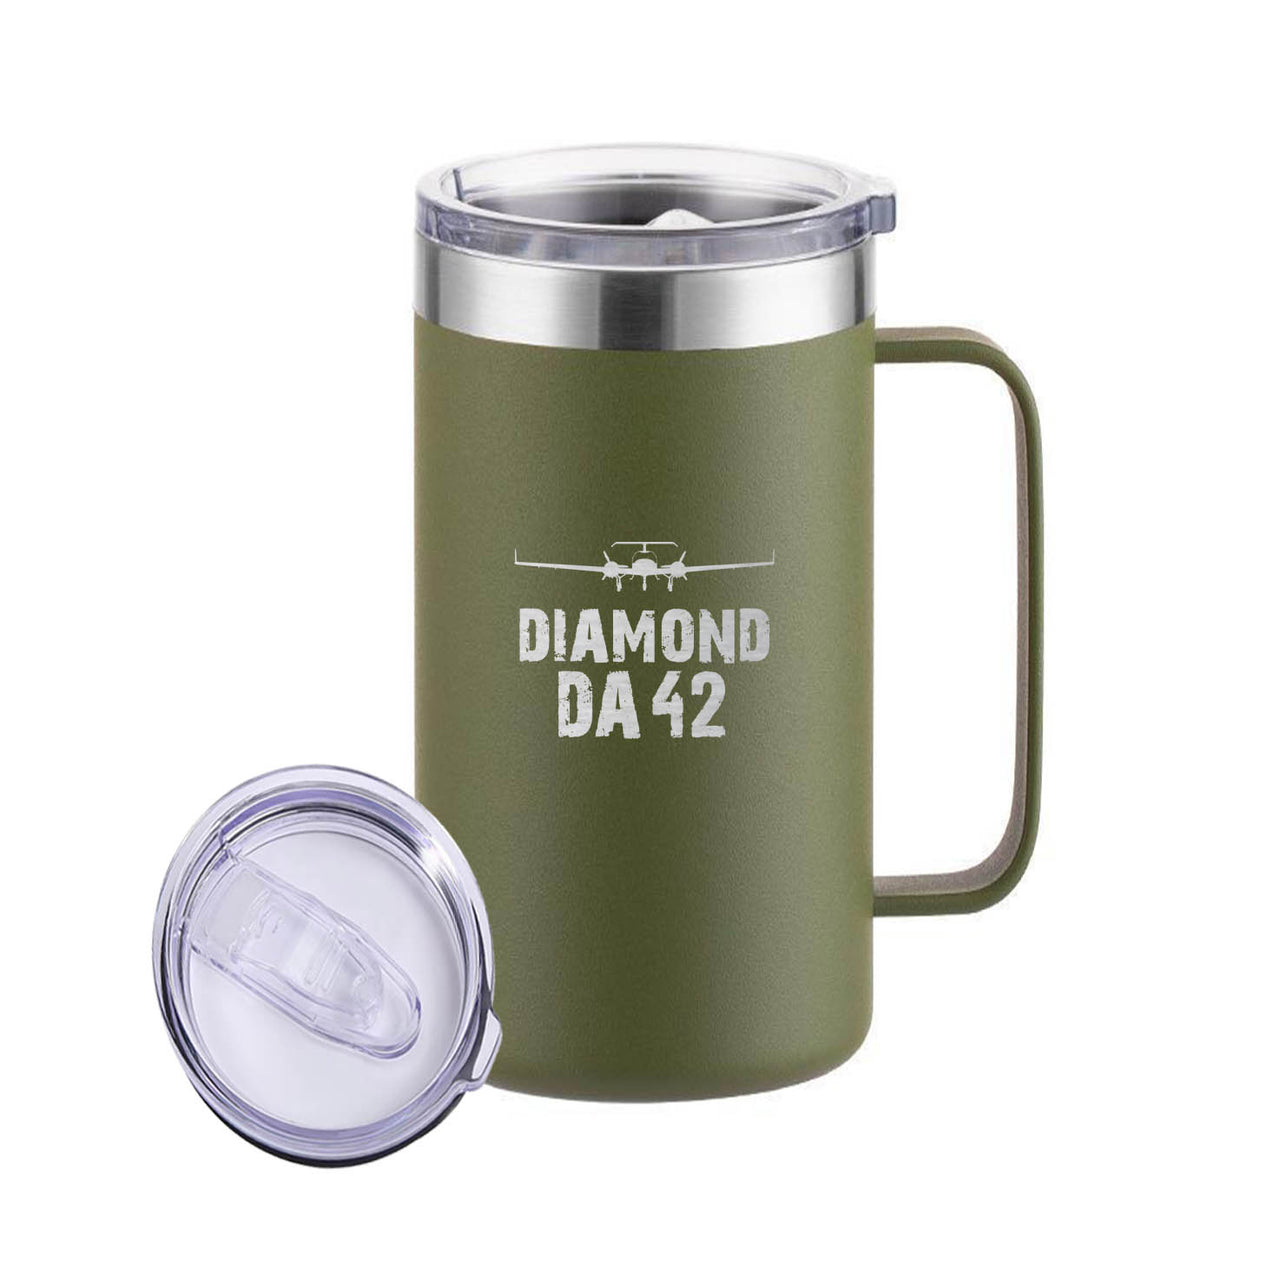 Diamond DA42 & Plane Designed Stainless Steel Beer Mugs